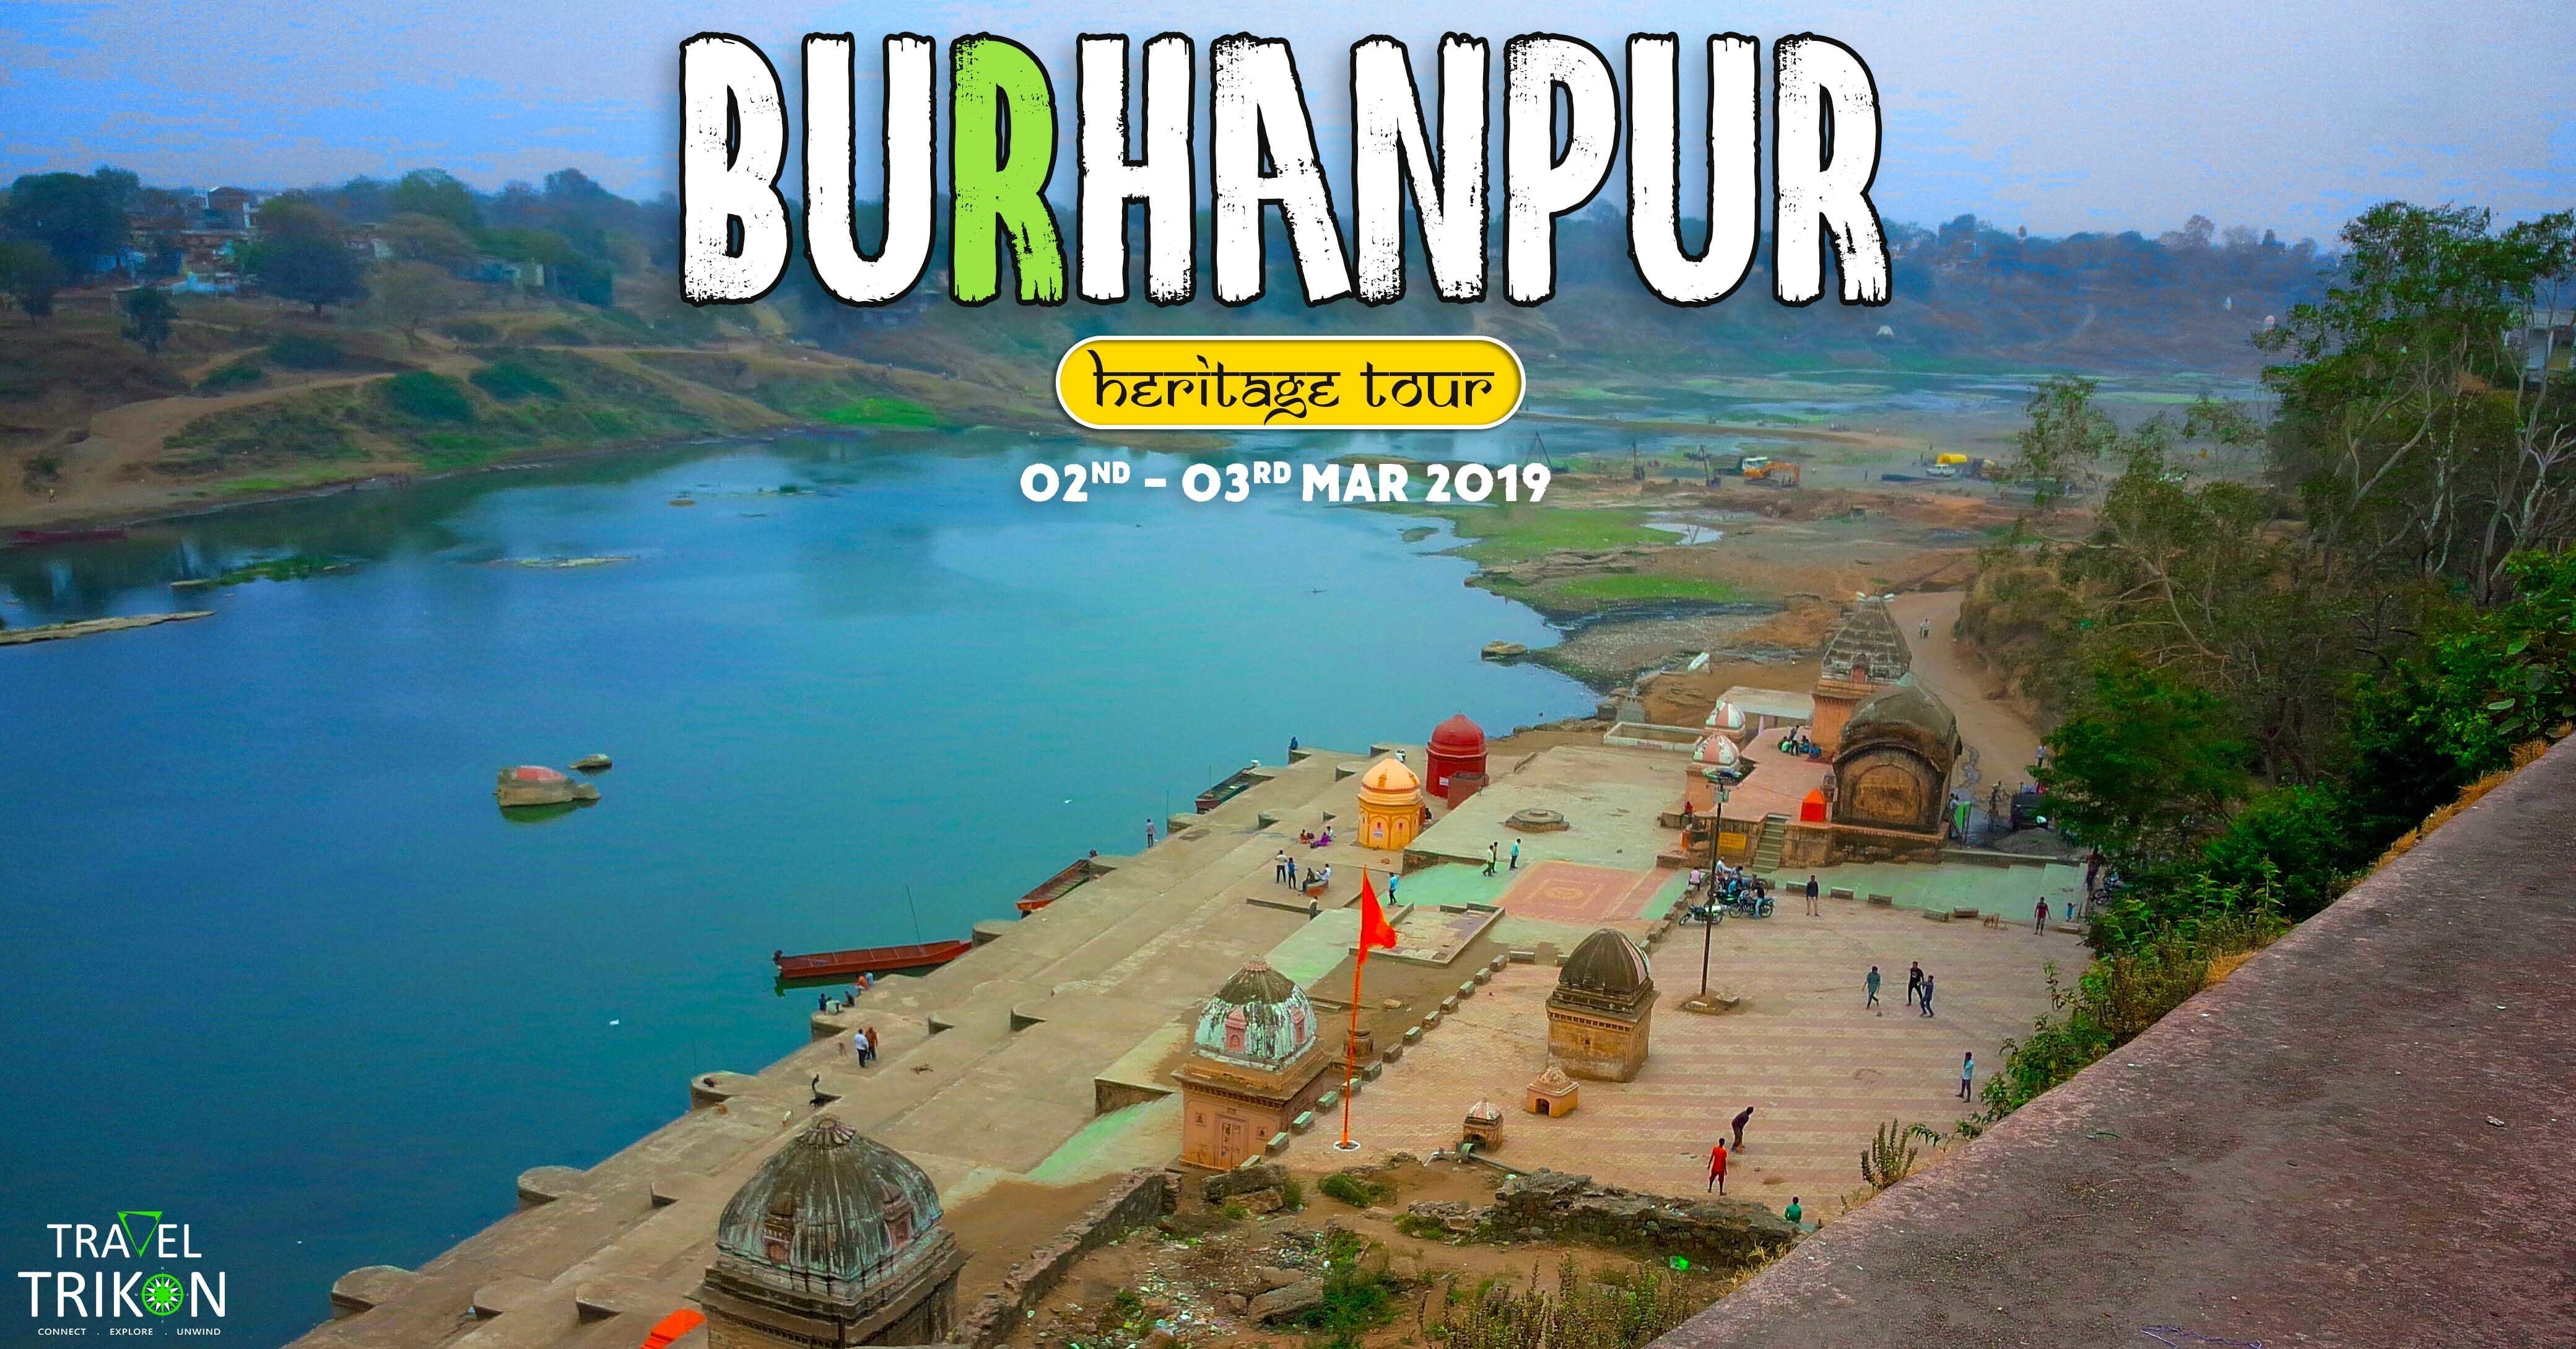 burhanpur tourism places